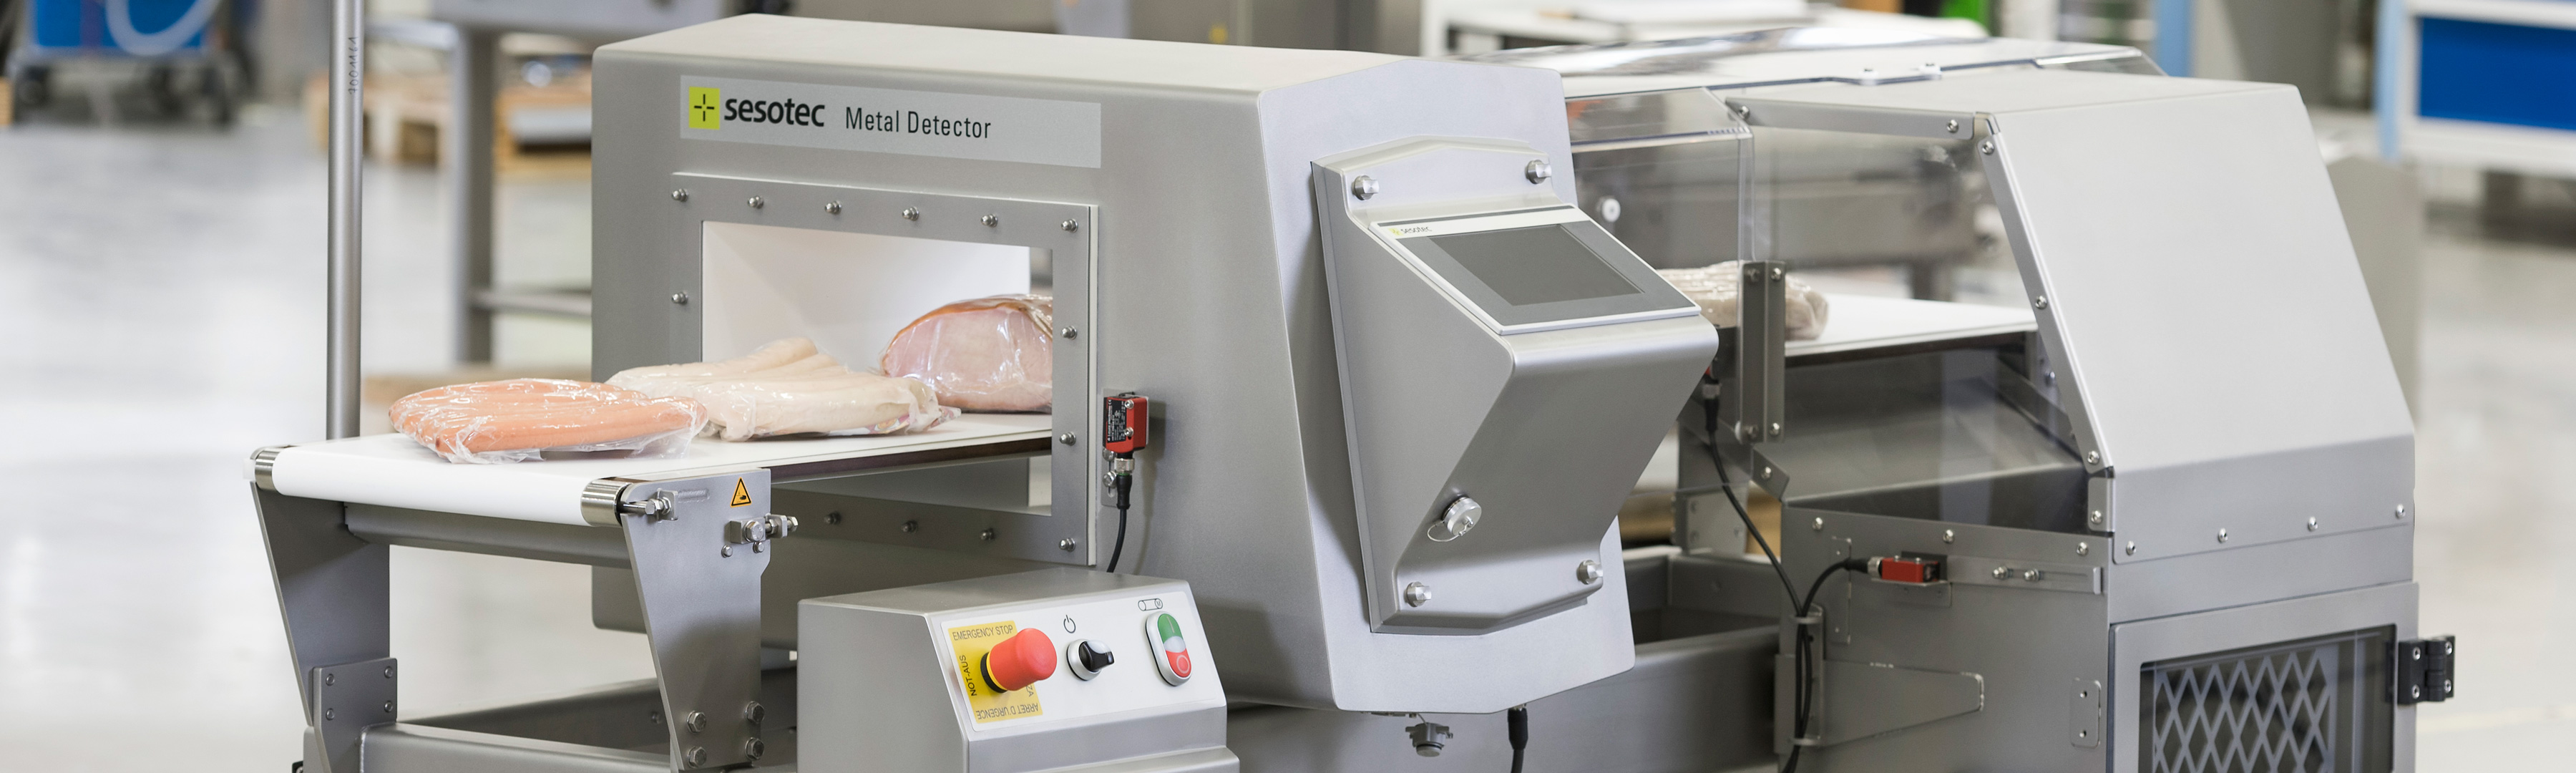 Metalldetektor für Lebensmittel mit Wurst und Fleisch auf Förderband